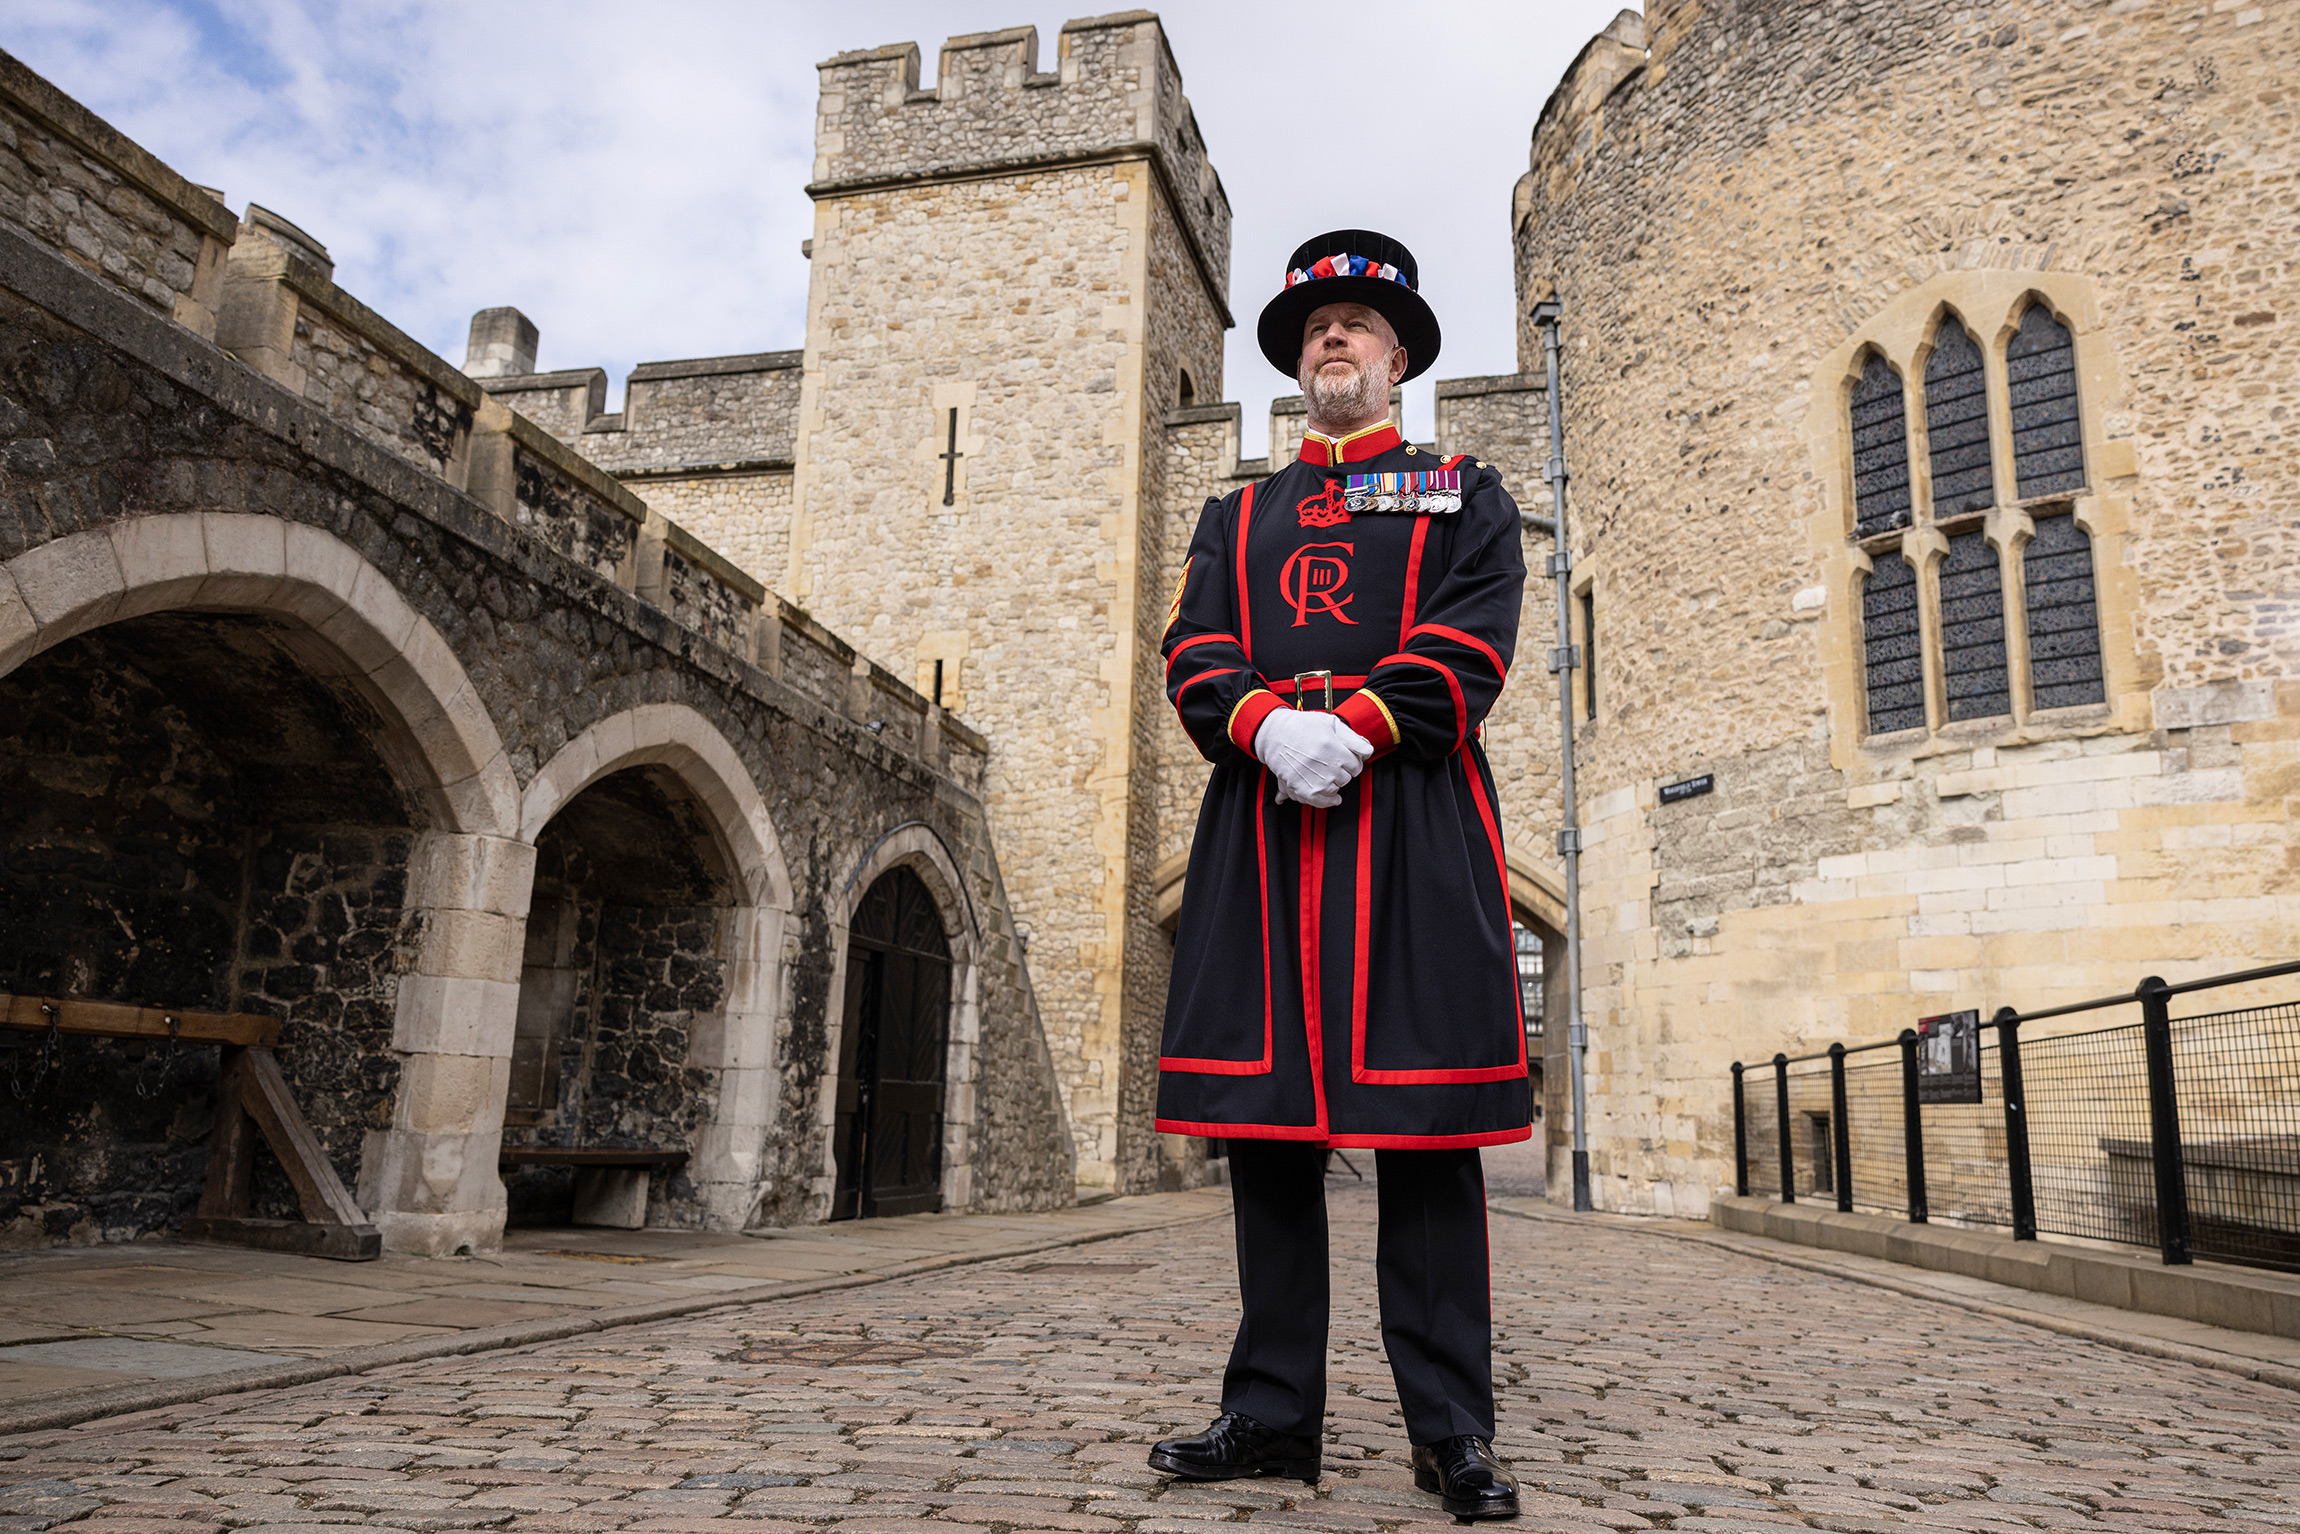 Церемониальные стражи лондонского Тауэра&nbsp;&mdash; &laquo;Йоменская Стража&raquo; (неофициальное название&nbsp;&mdash; бифитеры)&nbsp;&mdash; в преддверии коронации сменили униформу на новую, с монограммой короля Карла III. Бифитеры, охраняющие драгоценности короны, носят инициалы царствующего монарха на мундирах еще со времен Елизаветы I (вторая половина XVI века)